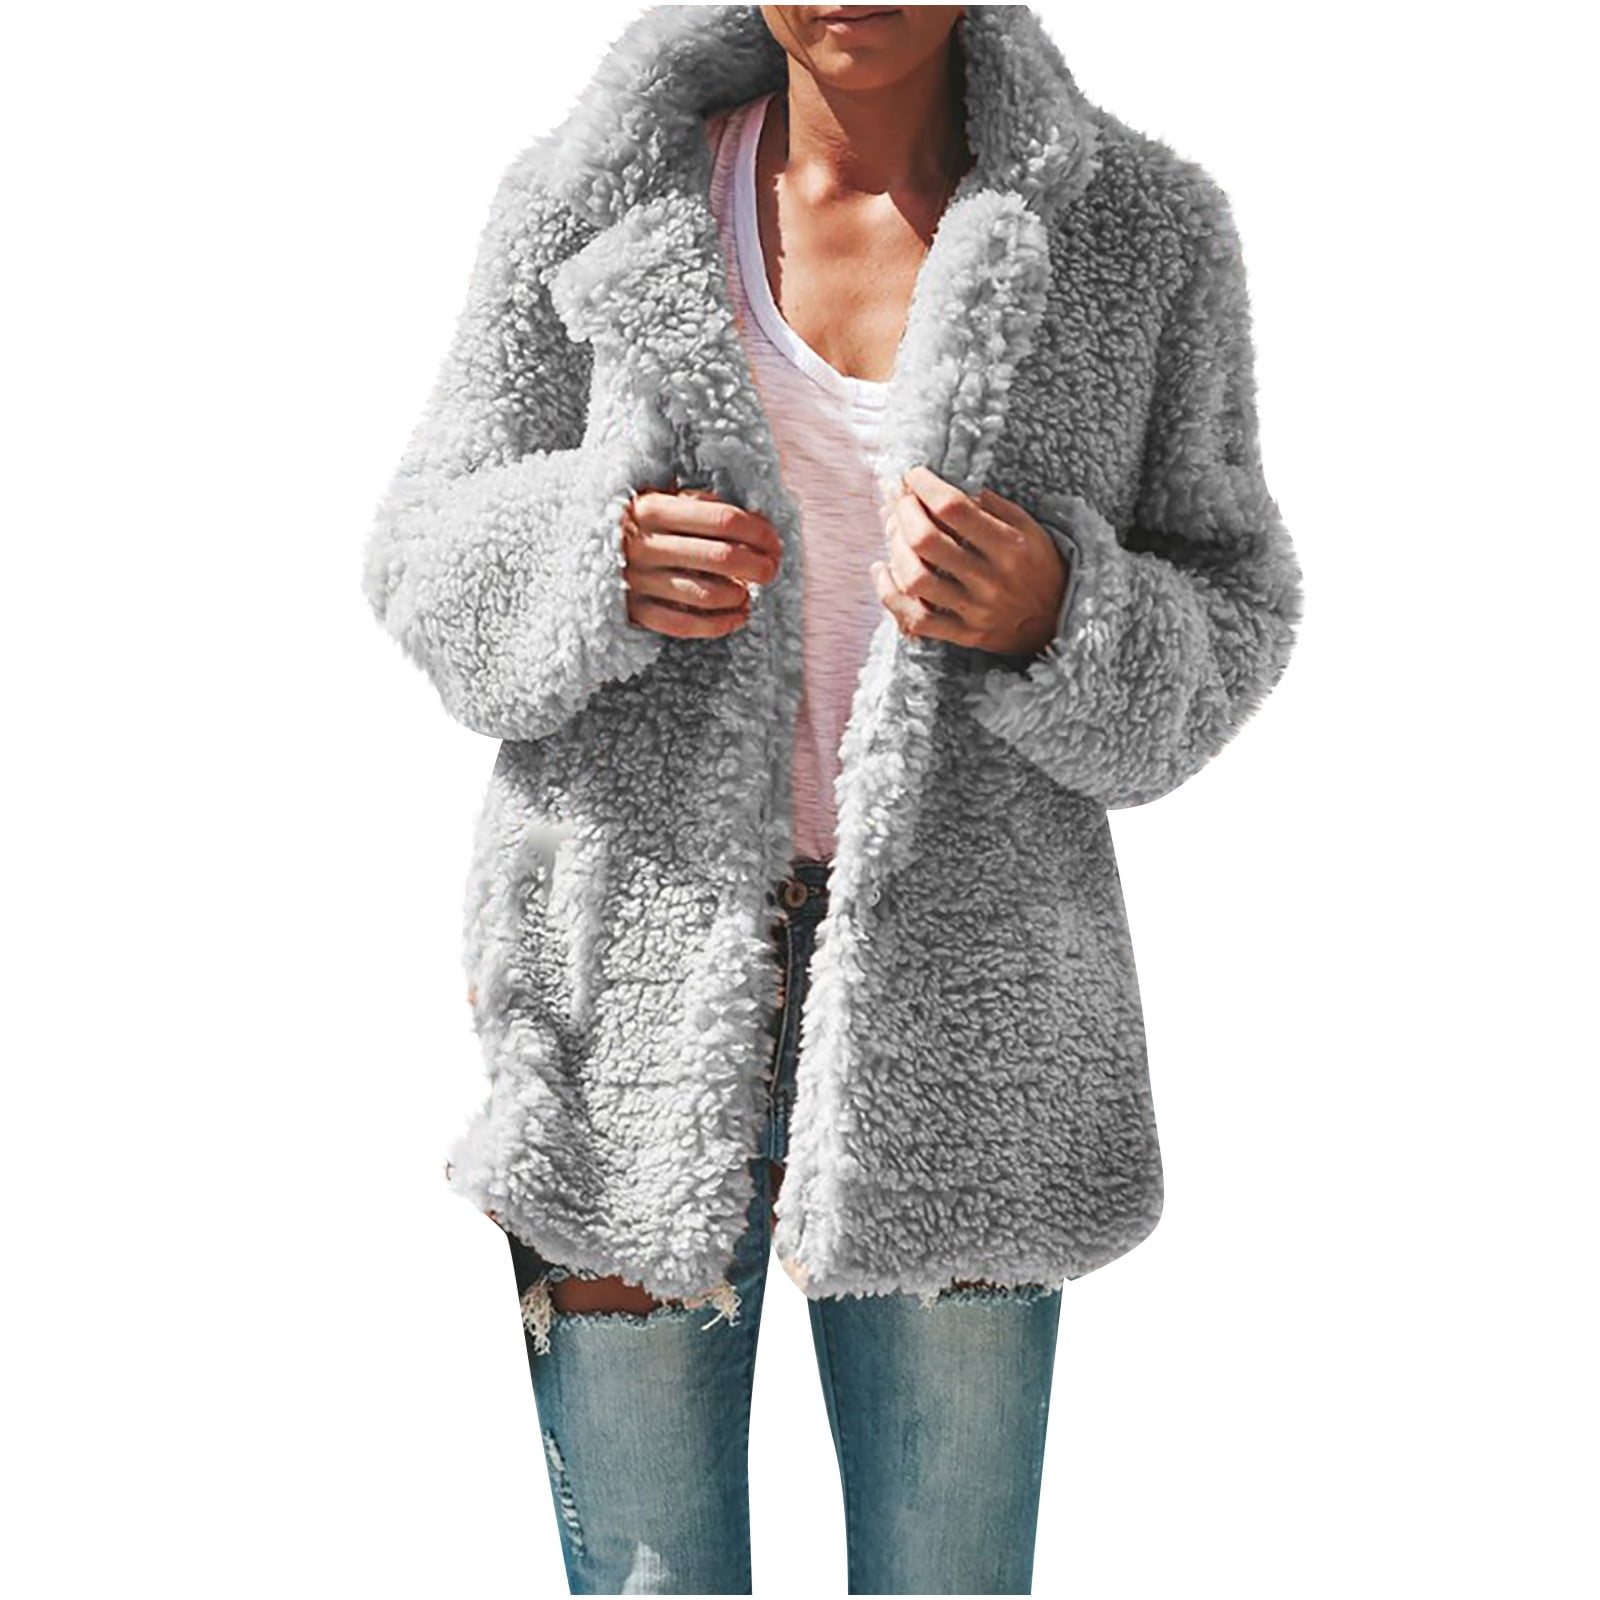 Ecqkame Winter Jackets for Women L Jacket Plush Winter Loose Bear Coat Size Lapel Oversized-Fit Warm Outerwear Women Beige Teddy Fleece Plus